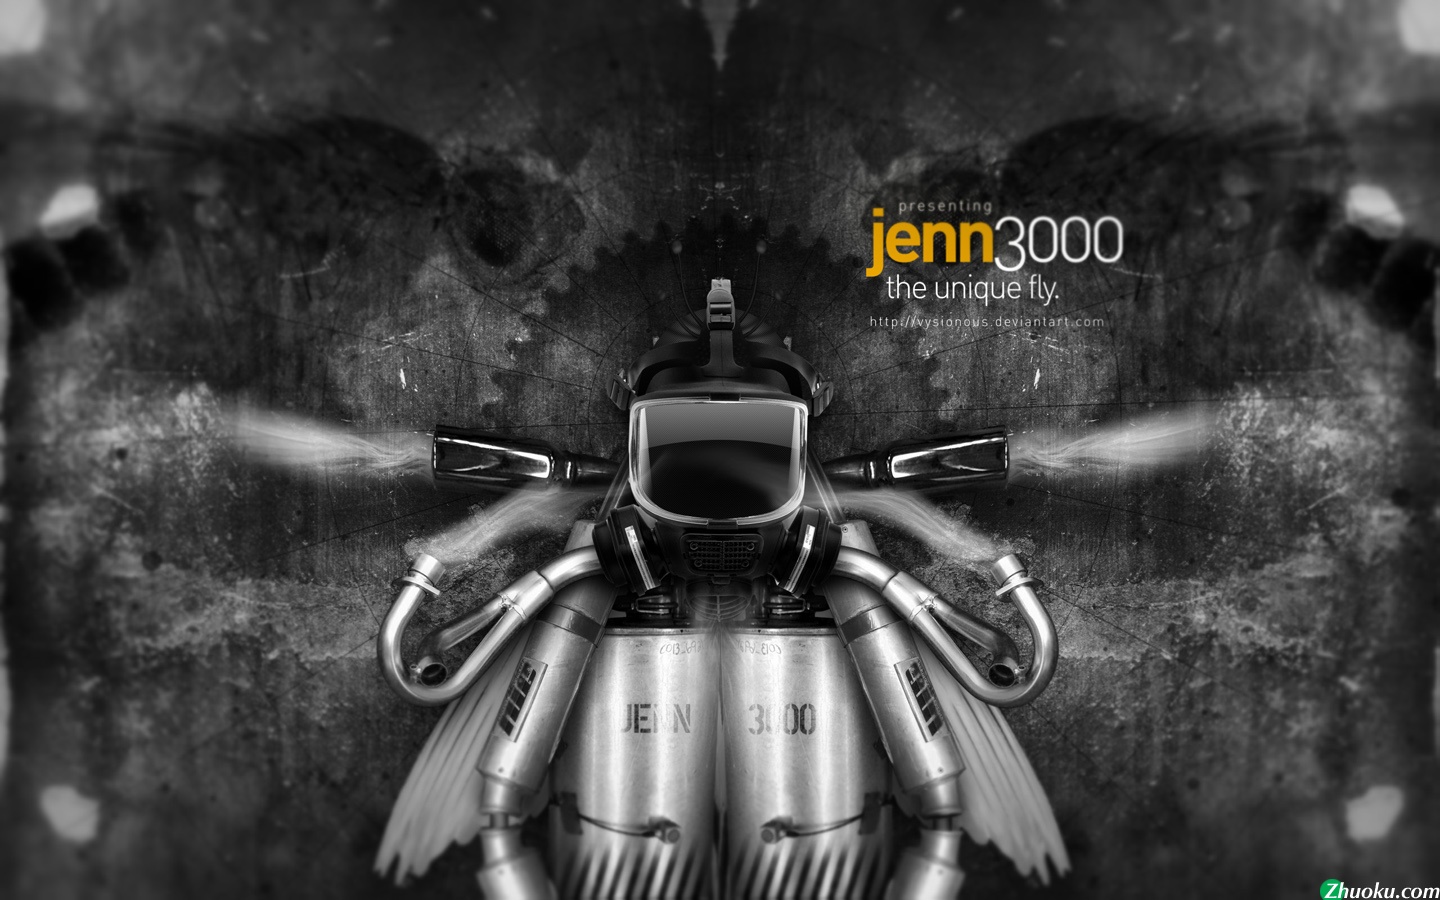 壁纸1440x900Jenn the Fly 壁纸8壁纸 Jenn, the Fly.壁纸 Jenn, the Fly.图片 Jenn, the Fly.素材 精选壁纸 精选图库 精选图片素材桌面壁纸